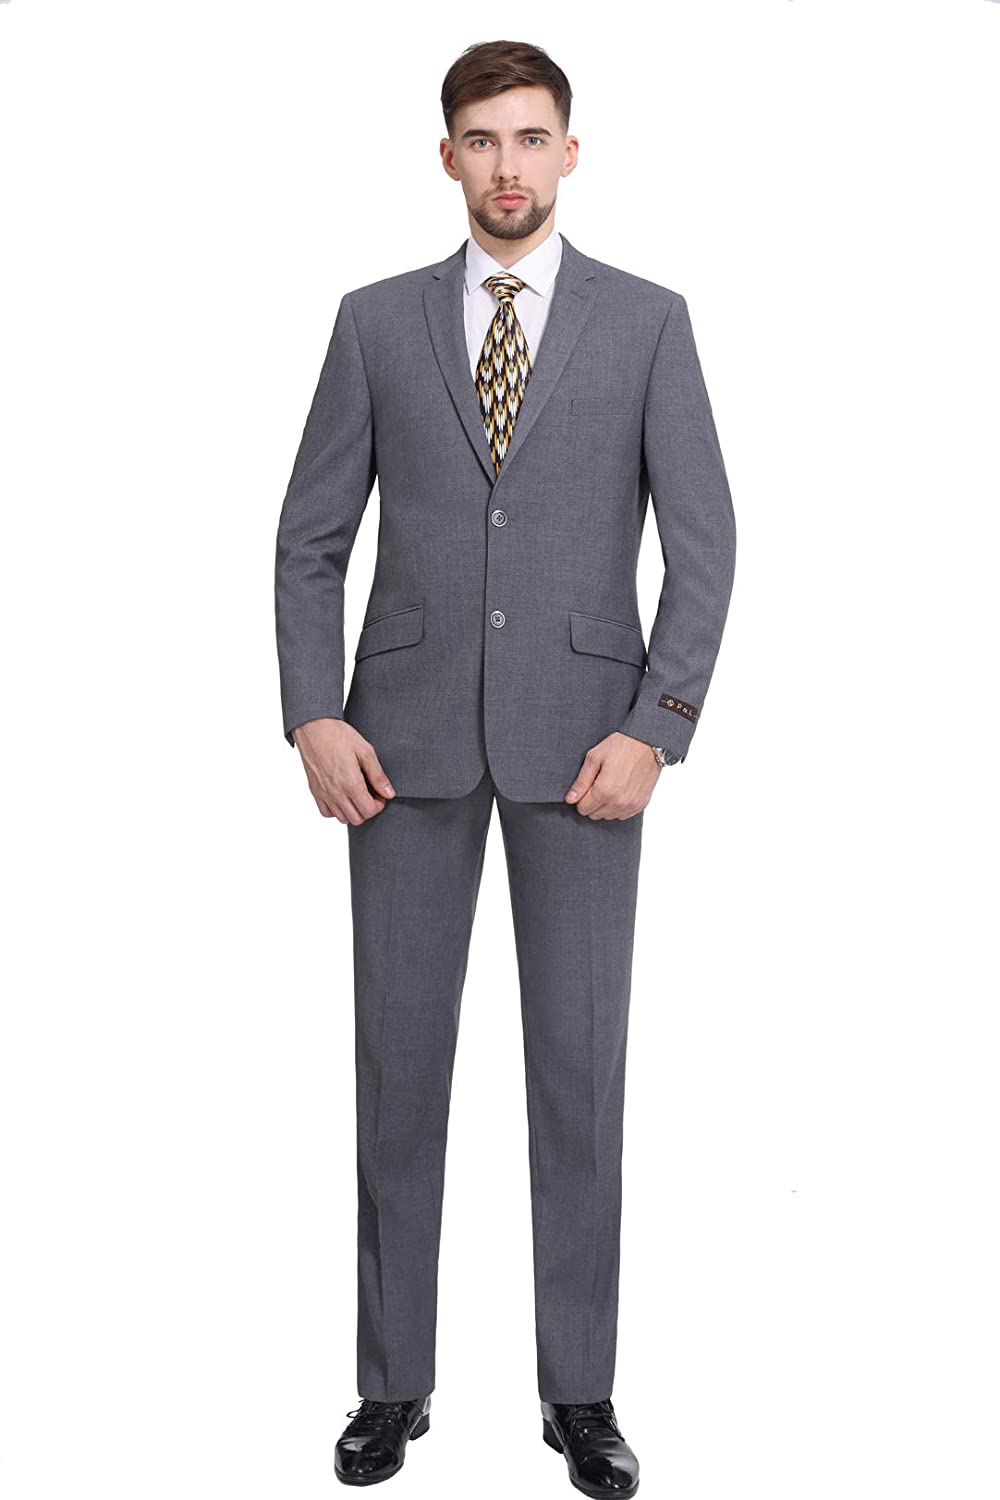 P&L Men's Premium Slim Fit 2-Piece Business Wedding Prom Suit Jacket Blazer Tux & Flat Pants Set 